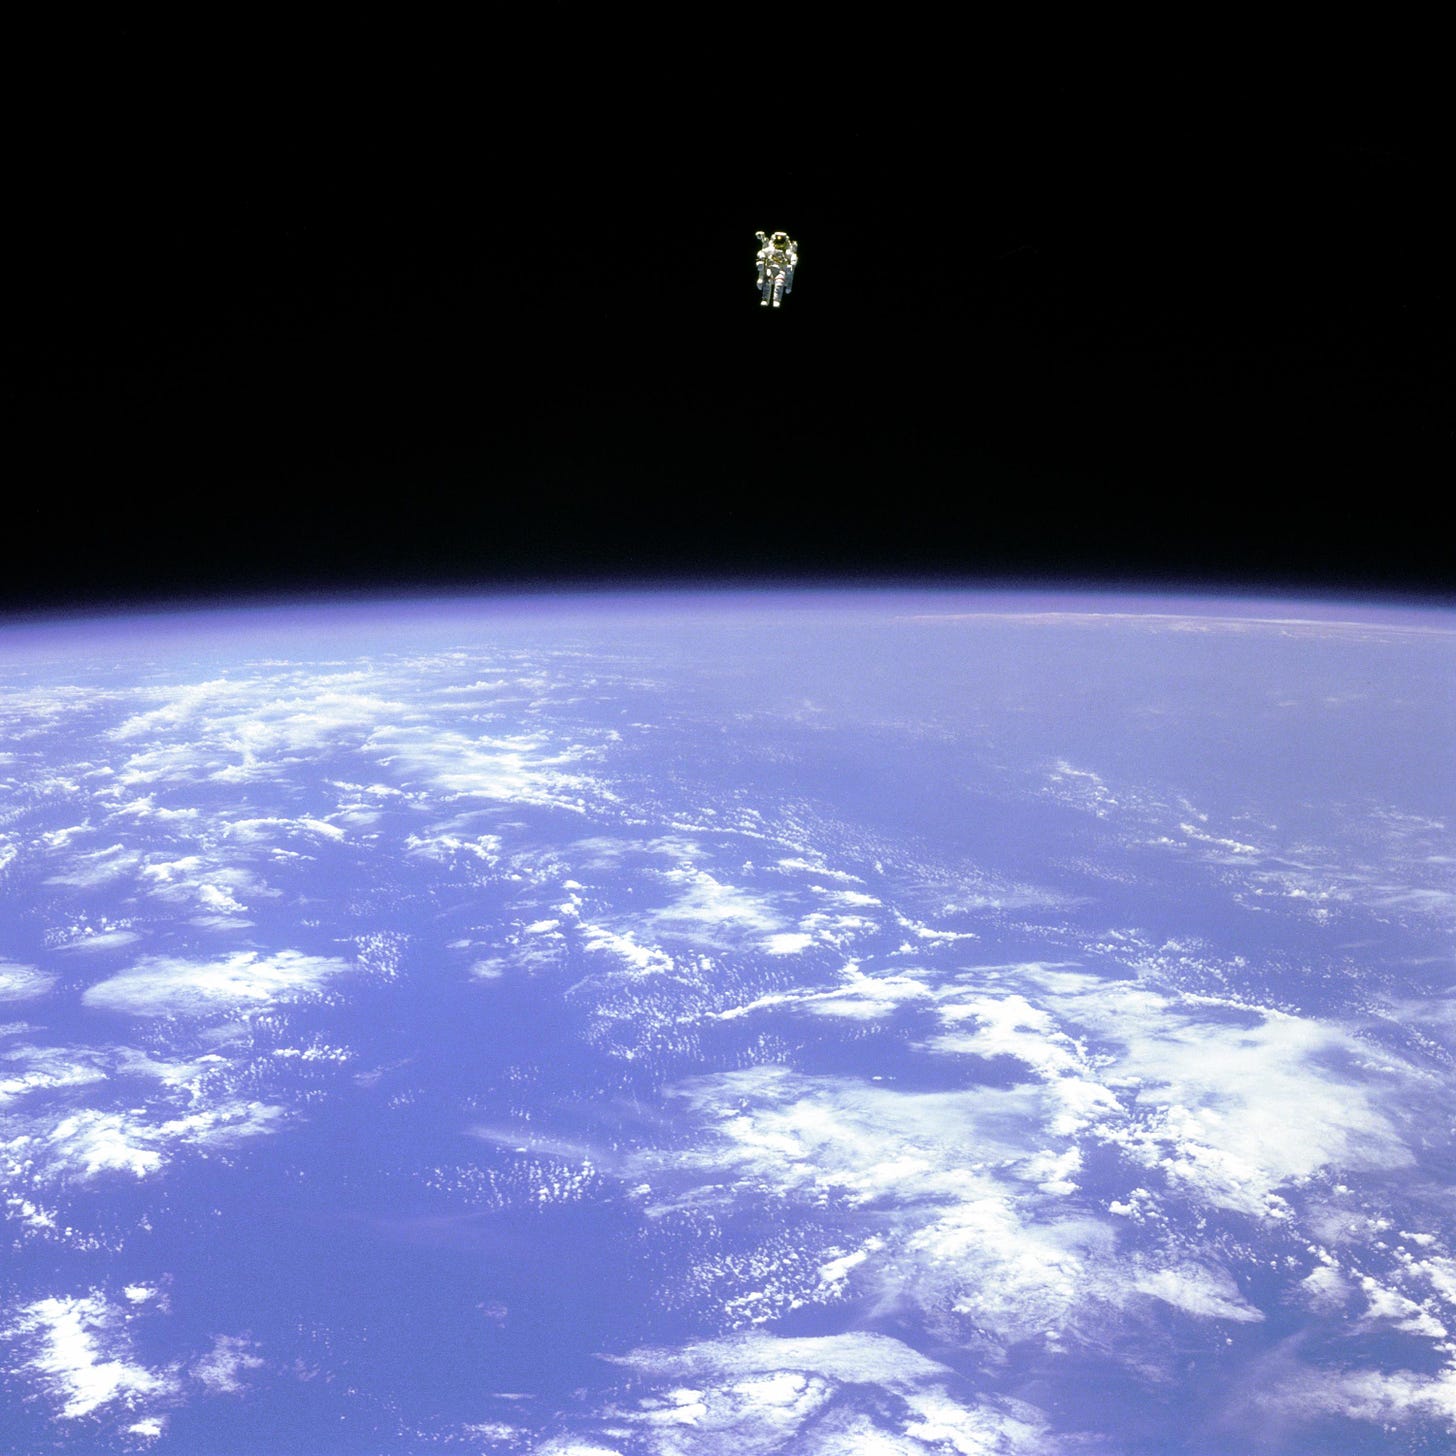 Imagen de Bruce McCandless II flotando en el espacio